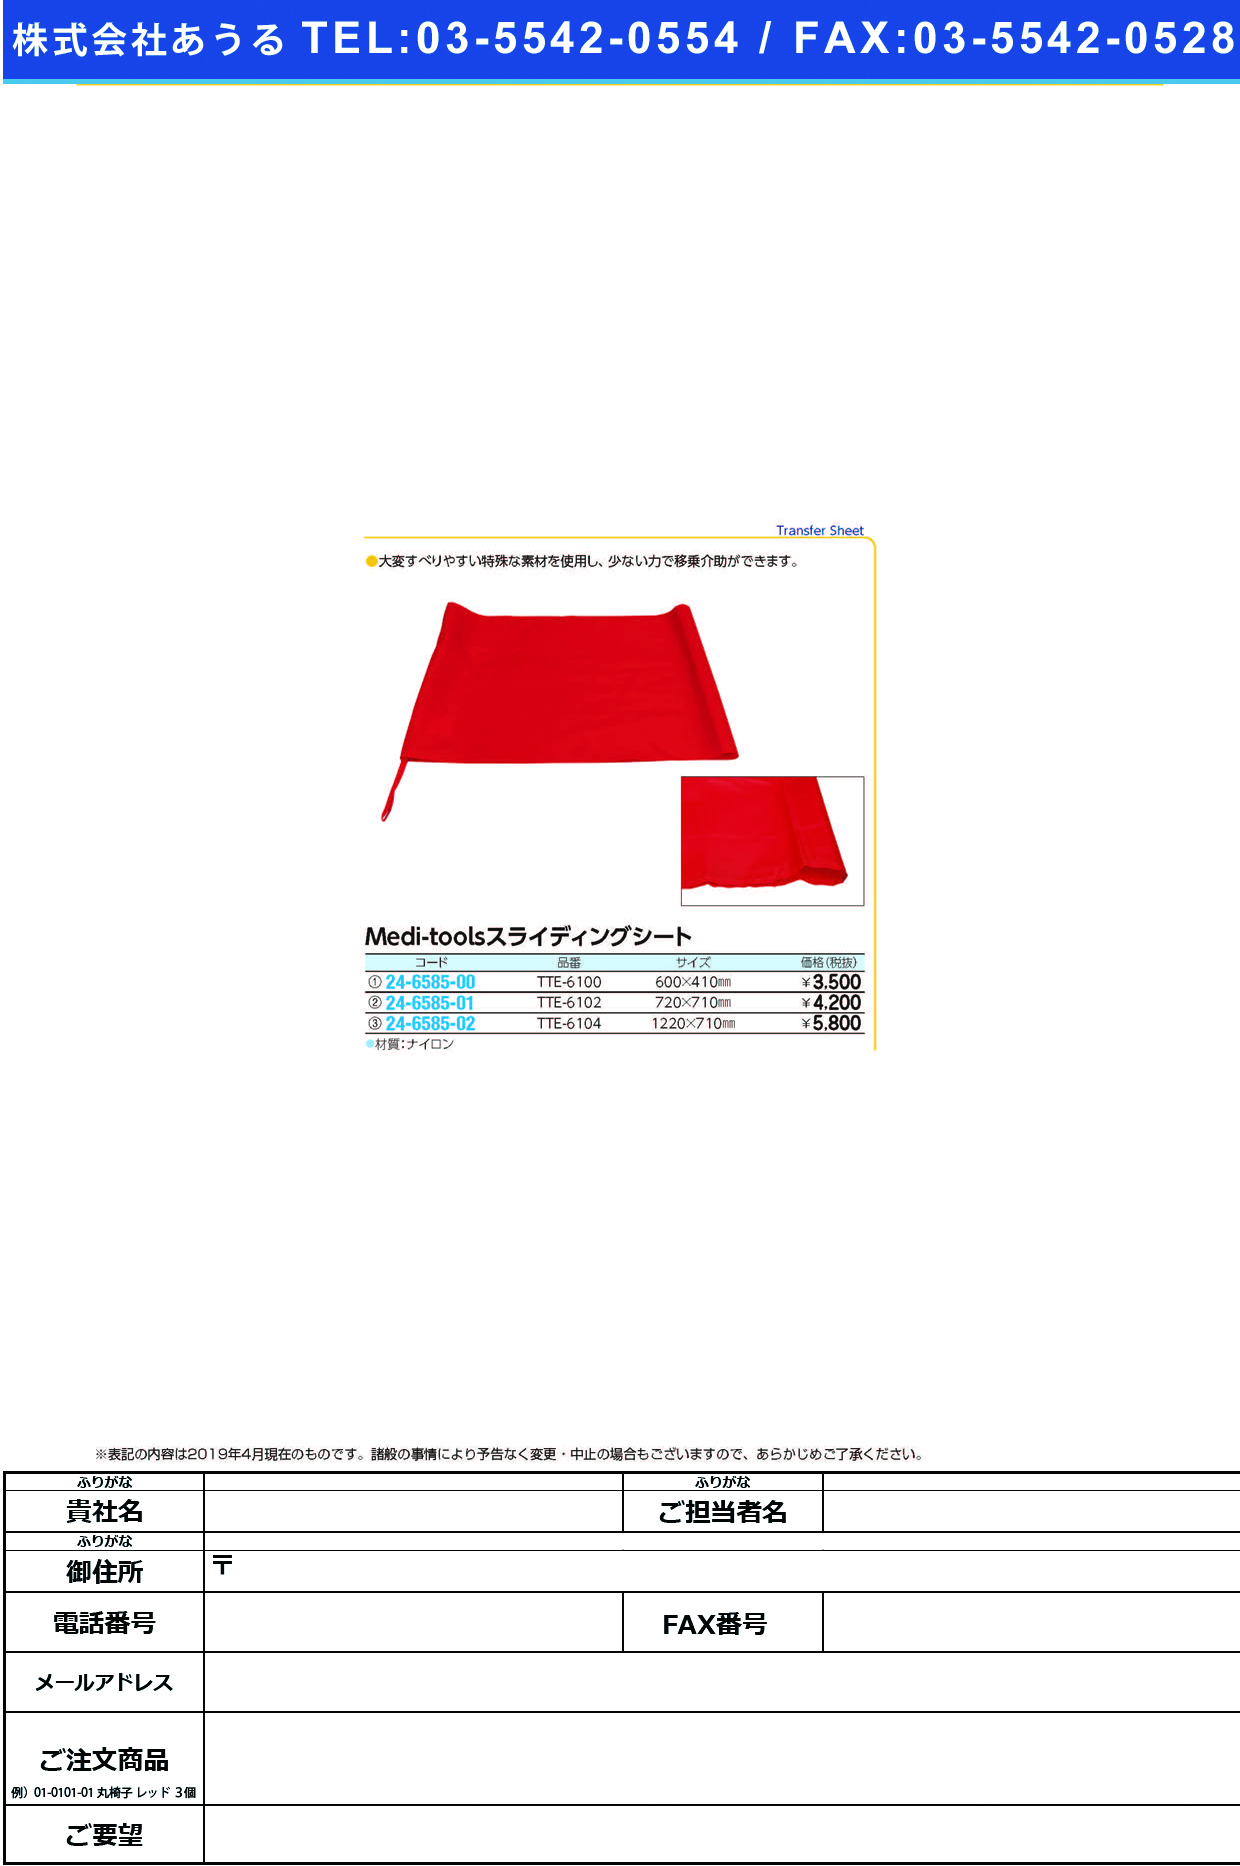 (24-6585-01)Ｍｅｄｉｔｏｏｌスライディングシート TTE-6102(720X710) ﾒﾃﾞｨﾂｰﾙｽﾗｲﾃﾞｨﾝｸﾞｼｰﾄ(日本エンゼル)【1枚単位】【2019年カタログ商品】